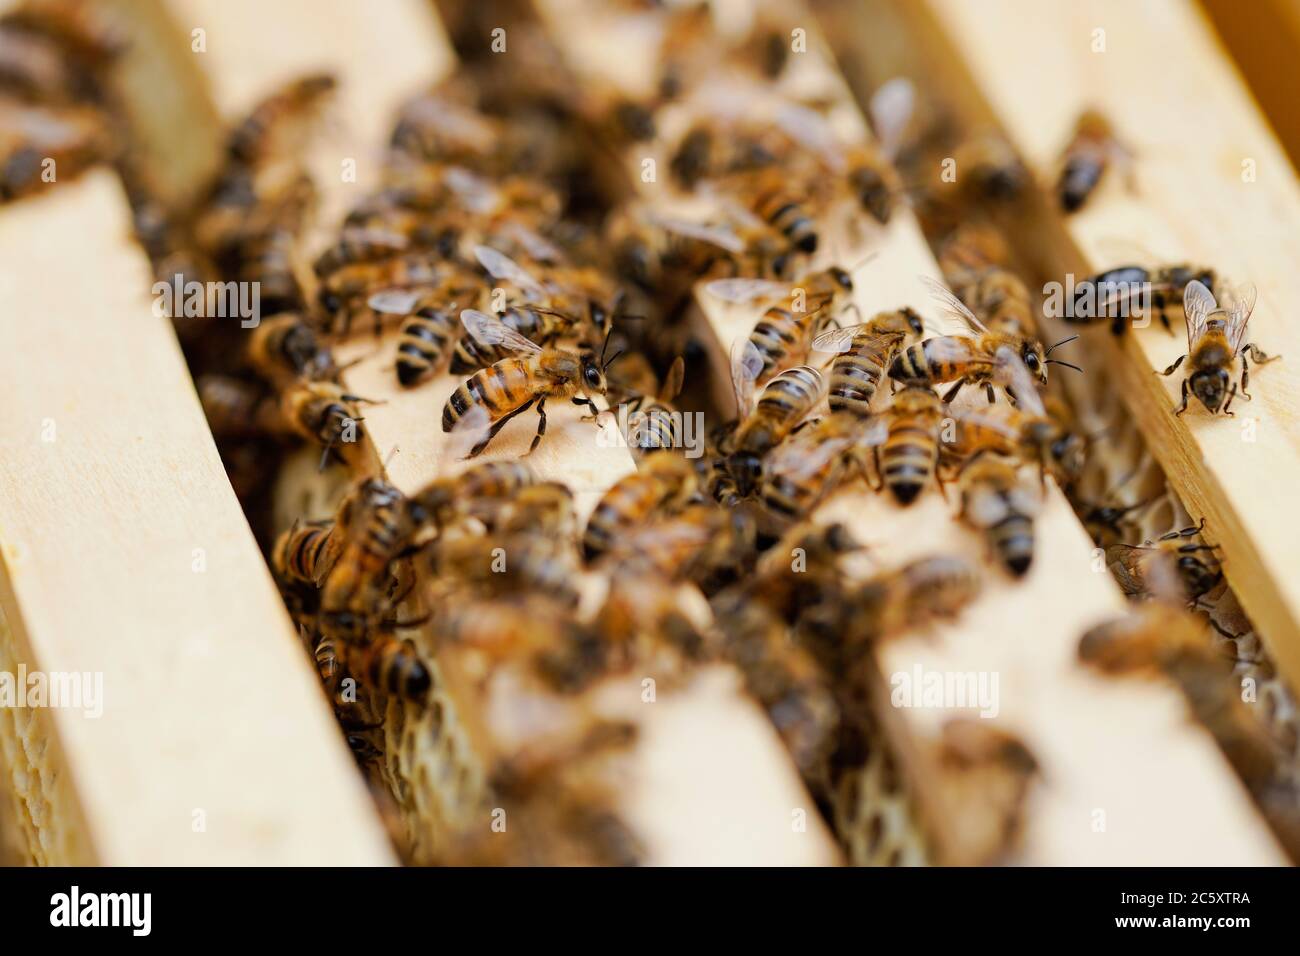 Heidelberg, Germania. 10 Giugno 2020. Le api di un alveare della società 'üdwest Mietbienen' sono da vedere nella zona di un'agenzia di spedizione a nido d'ape. Lo squadrone dell'apicoltore può affittare 35 colonie di api e curarle al inquilino. (A dpa: 'Le api da noleggio che lavorano duramente volano per l'immagine e l'ambiente') Credit: Uwe Anspach/dpa/Alamy Live News Foto Stock